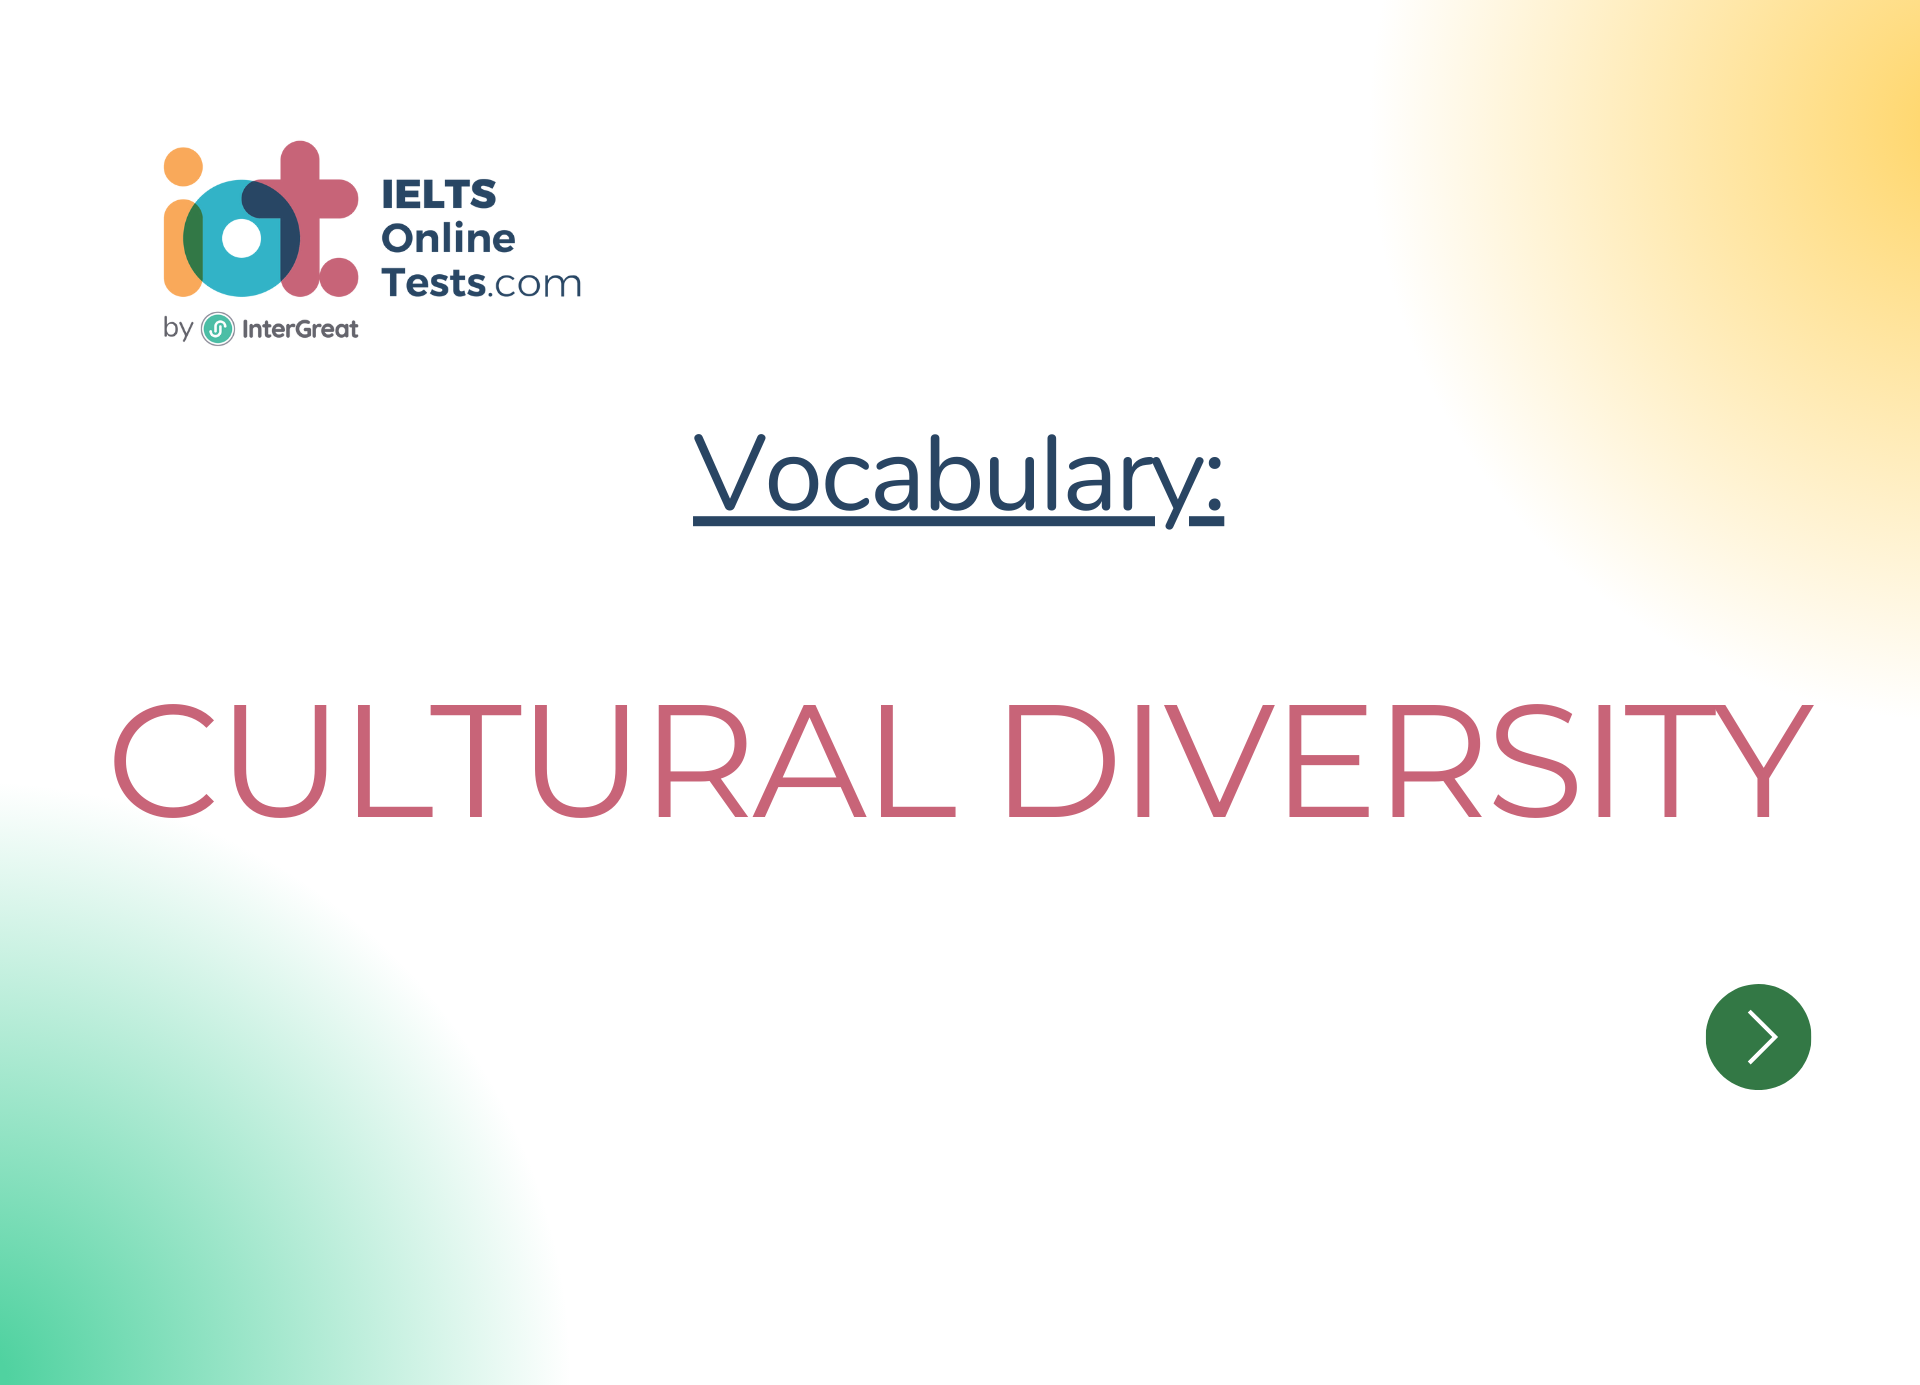 Đa dạng văn hóa (Cultural diversity)